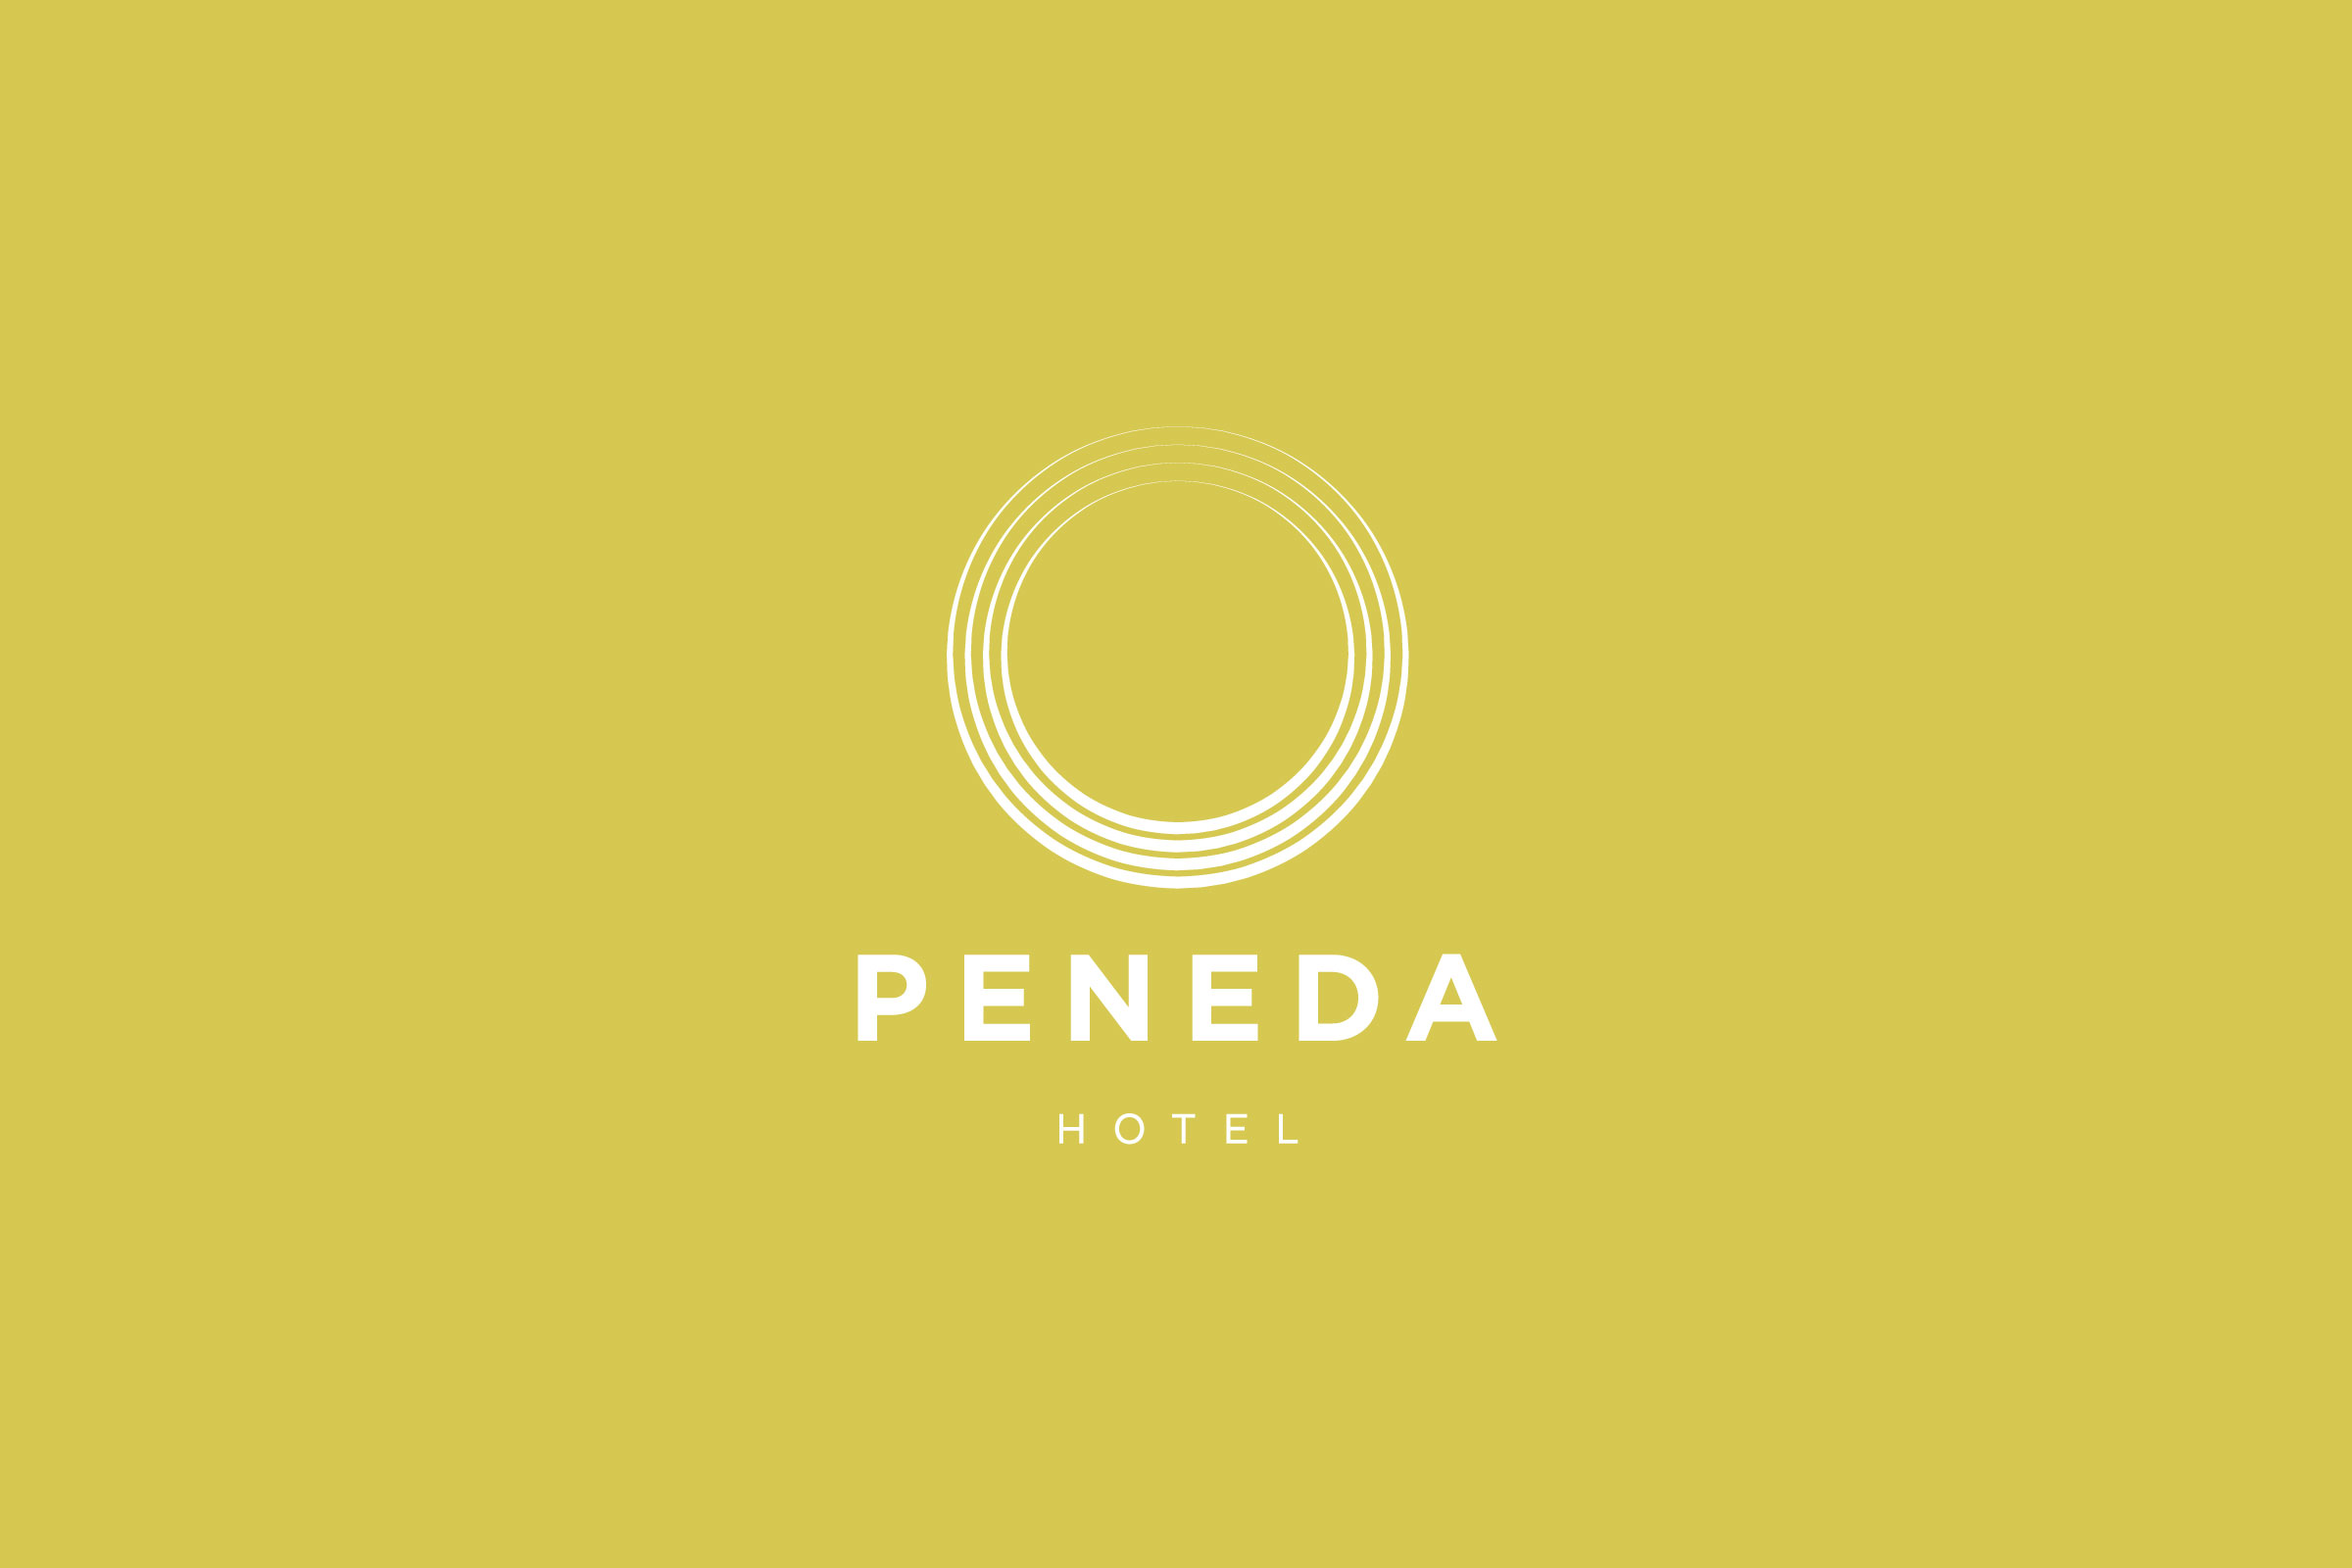 Peneda Hotel & Santuário